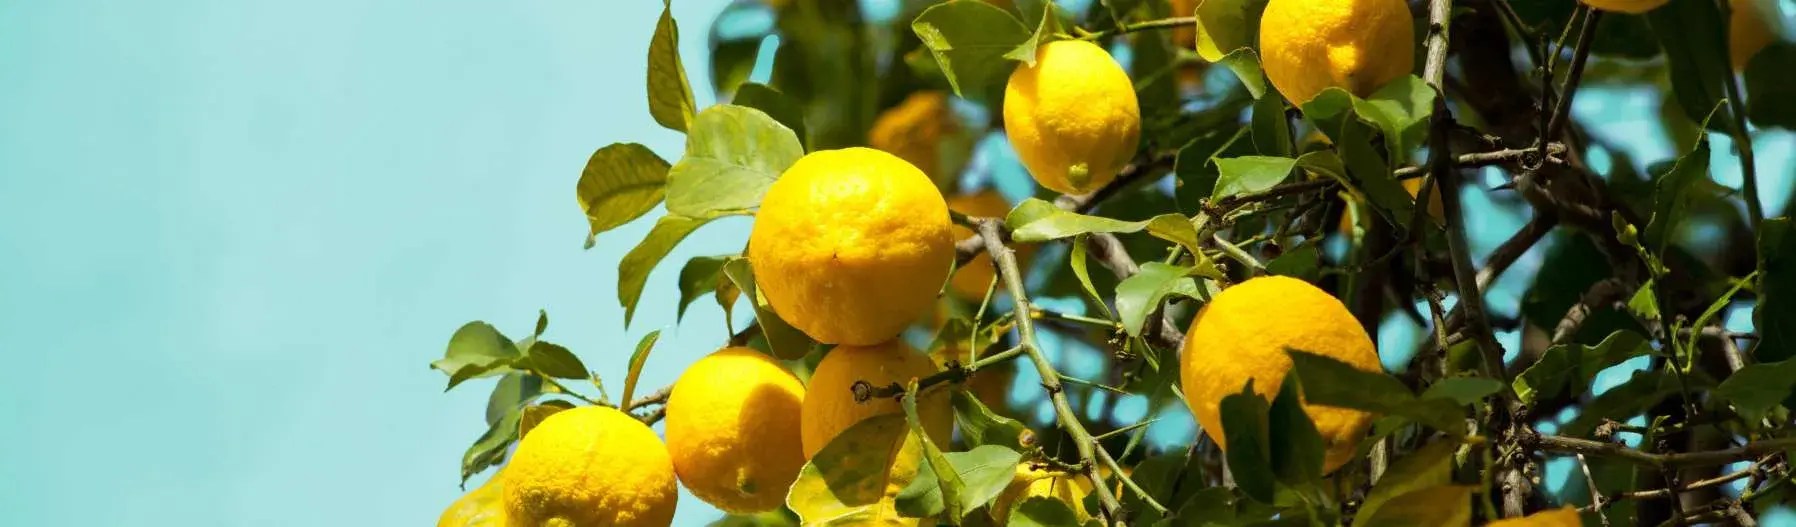 banner lemons 1